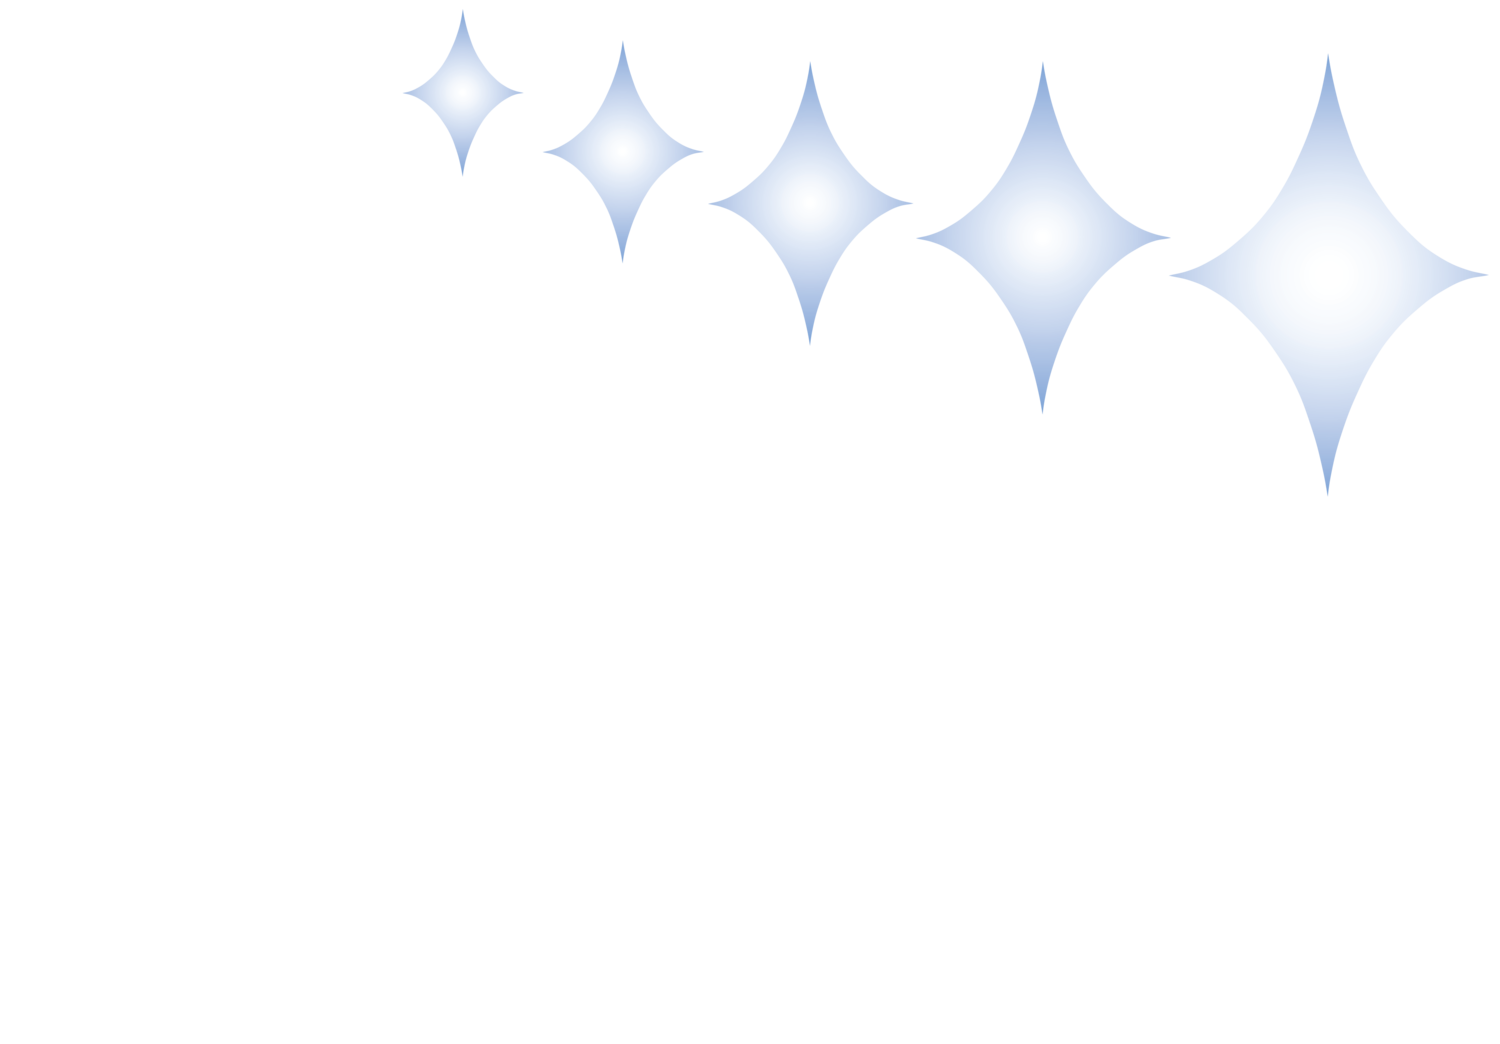 Nelson Orthodontics